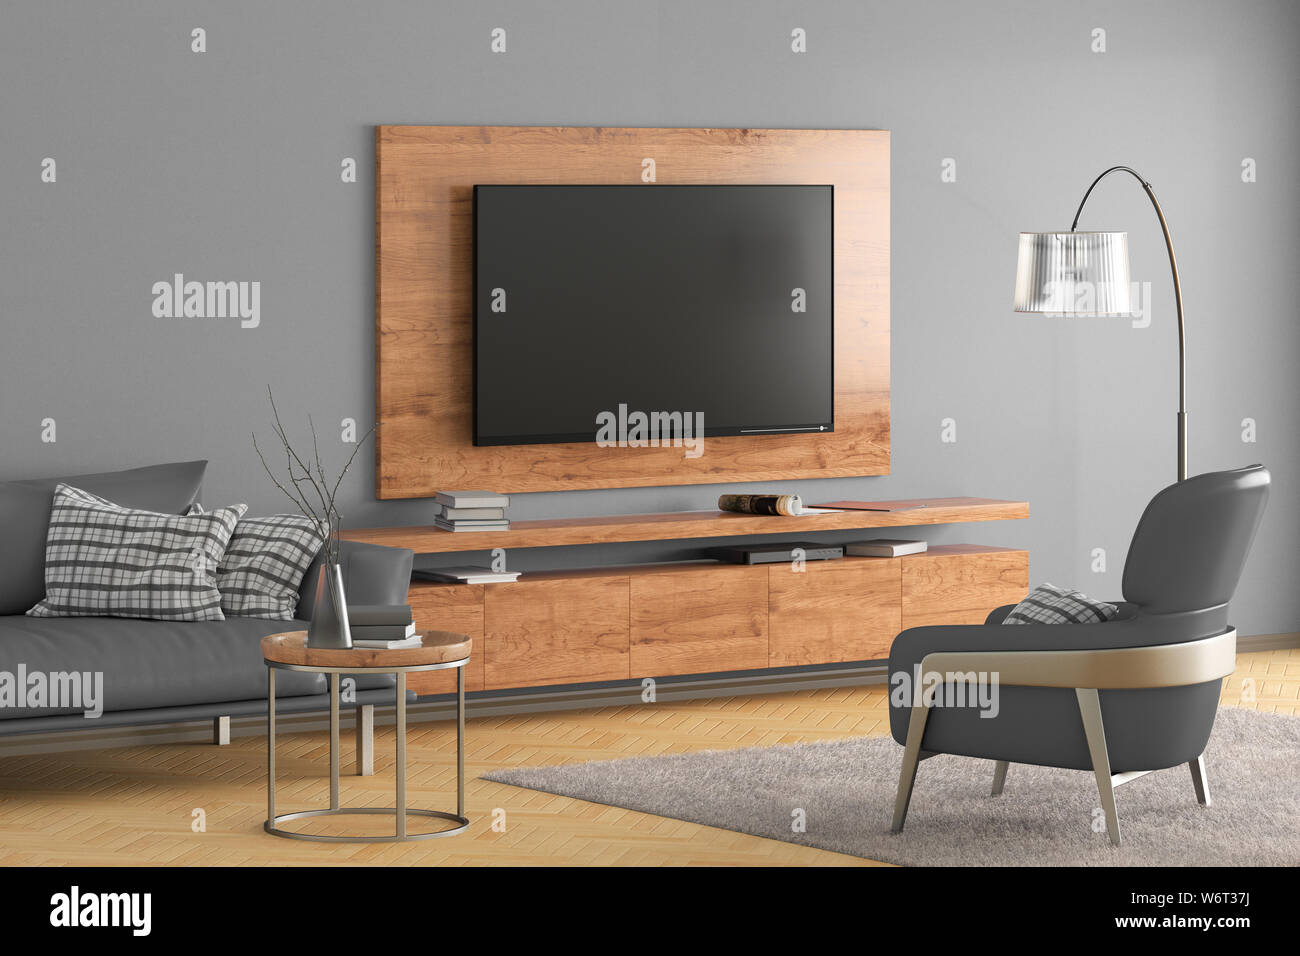 TV en la pared gris de la moderna sala de estar con sillones de cuero y  armario, sofá, mesa de café, lámpara de piso y alfombras de piel.  Ilustración 3d Fotografía de